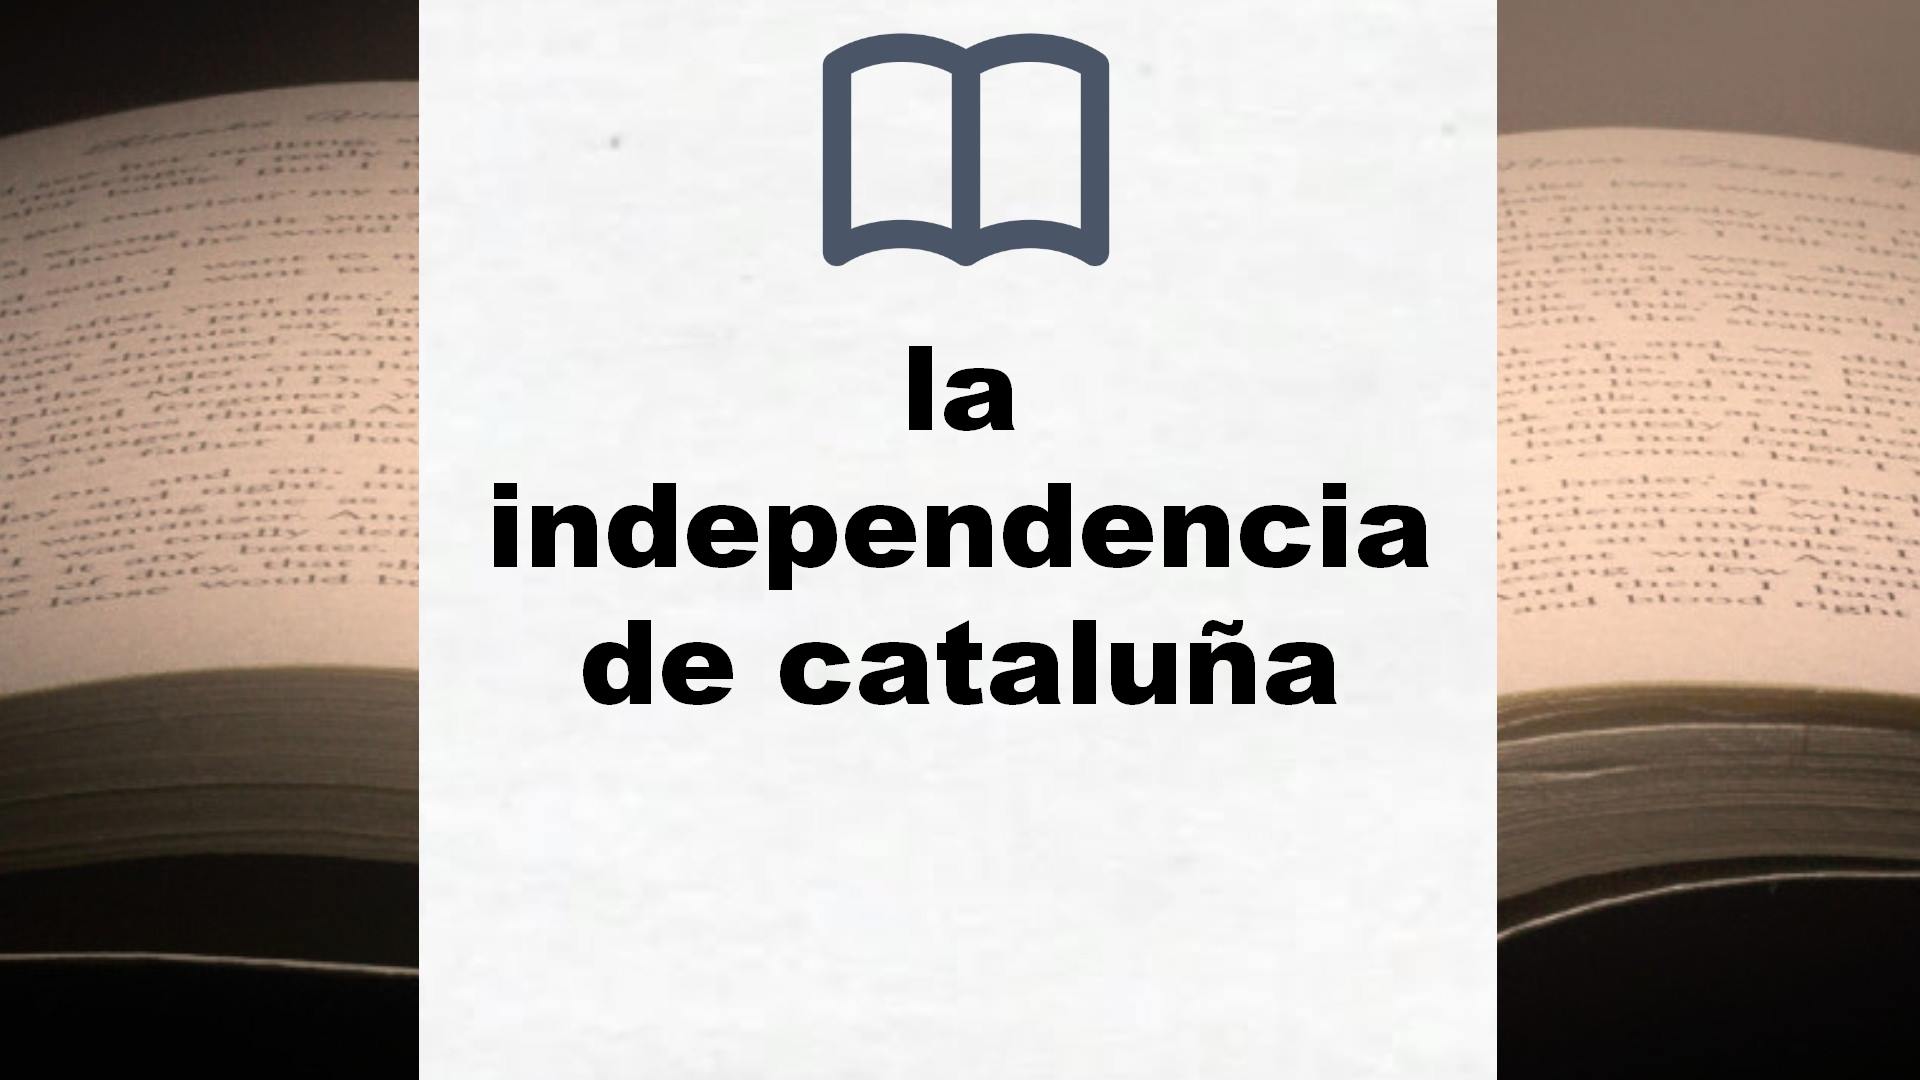 Libros sobre la independencia de cataluña